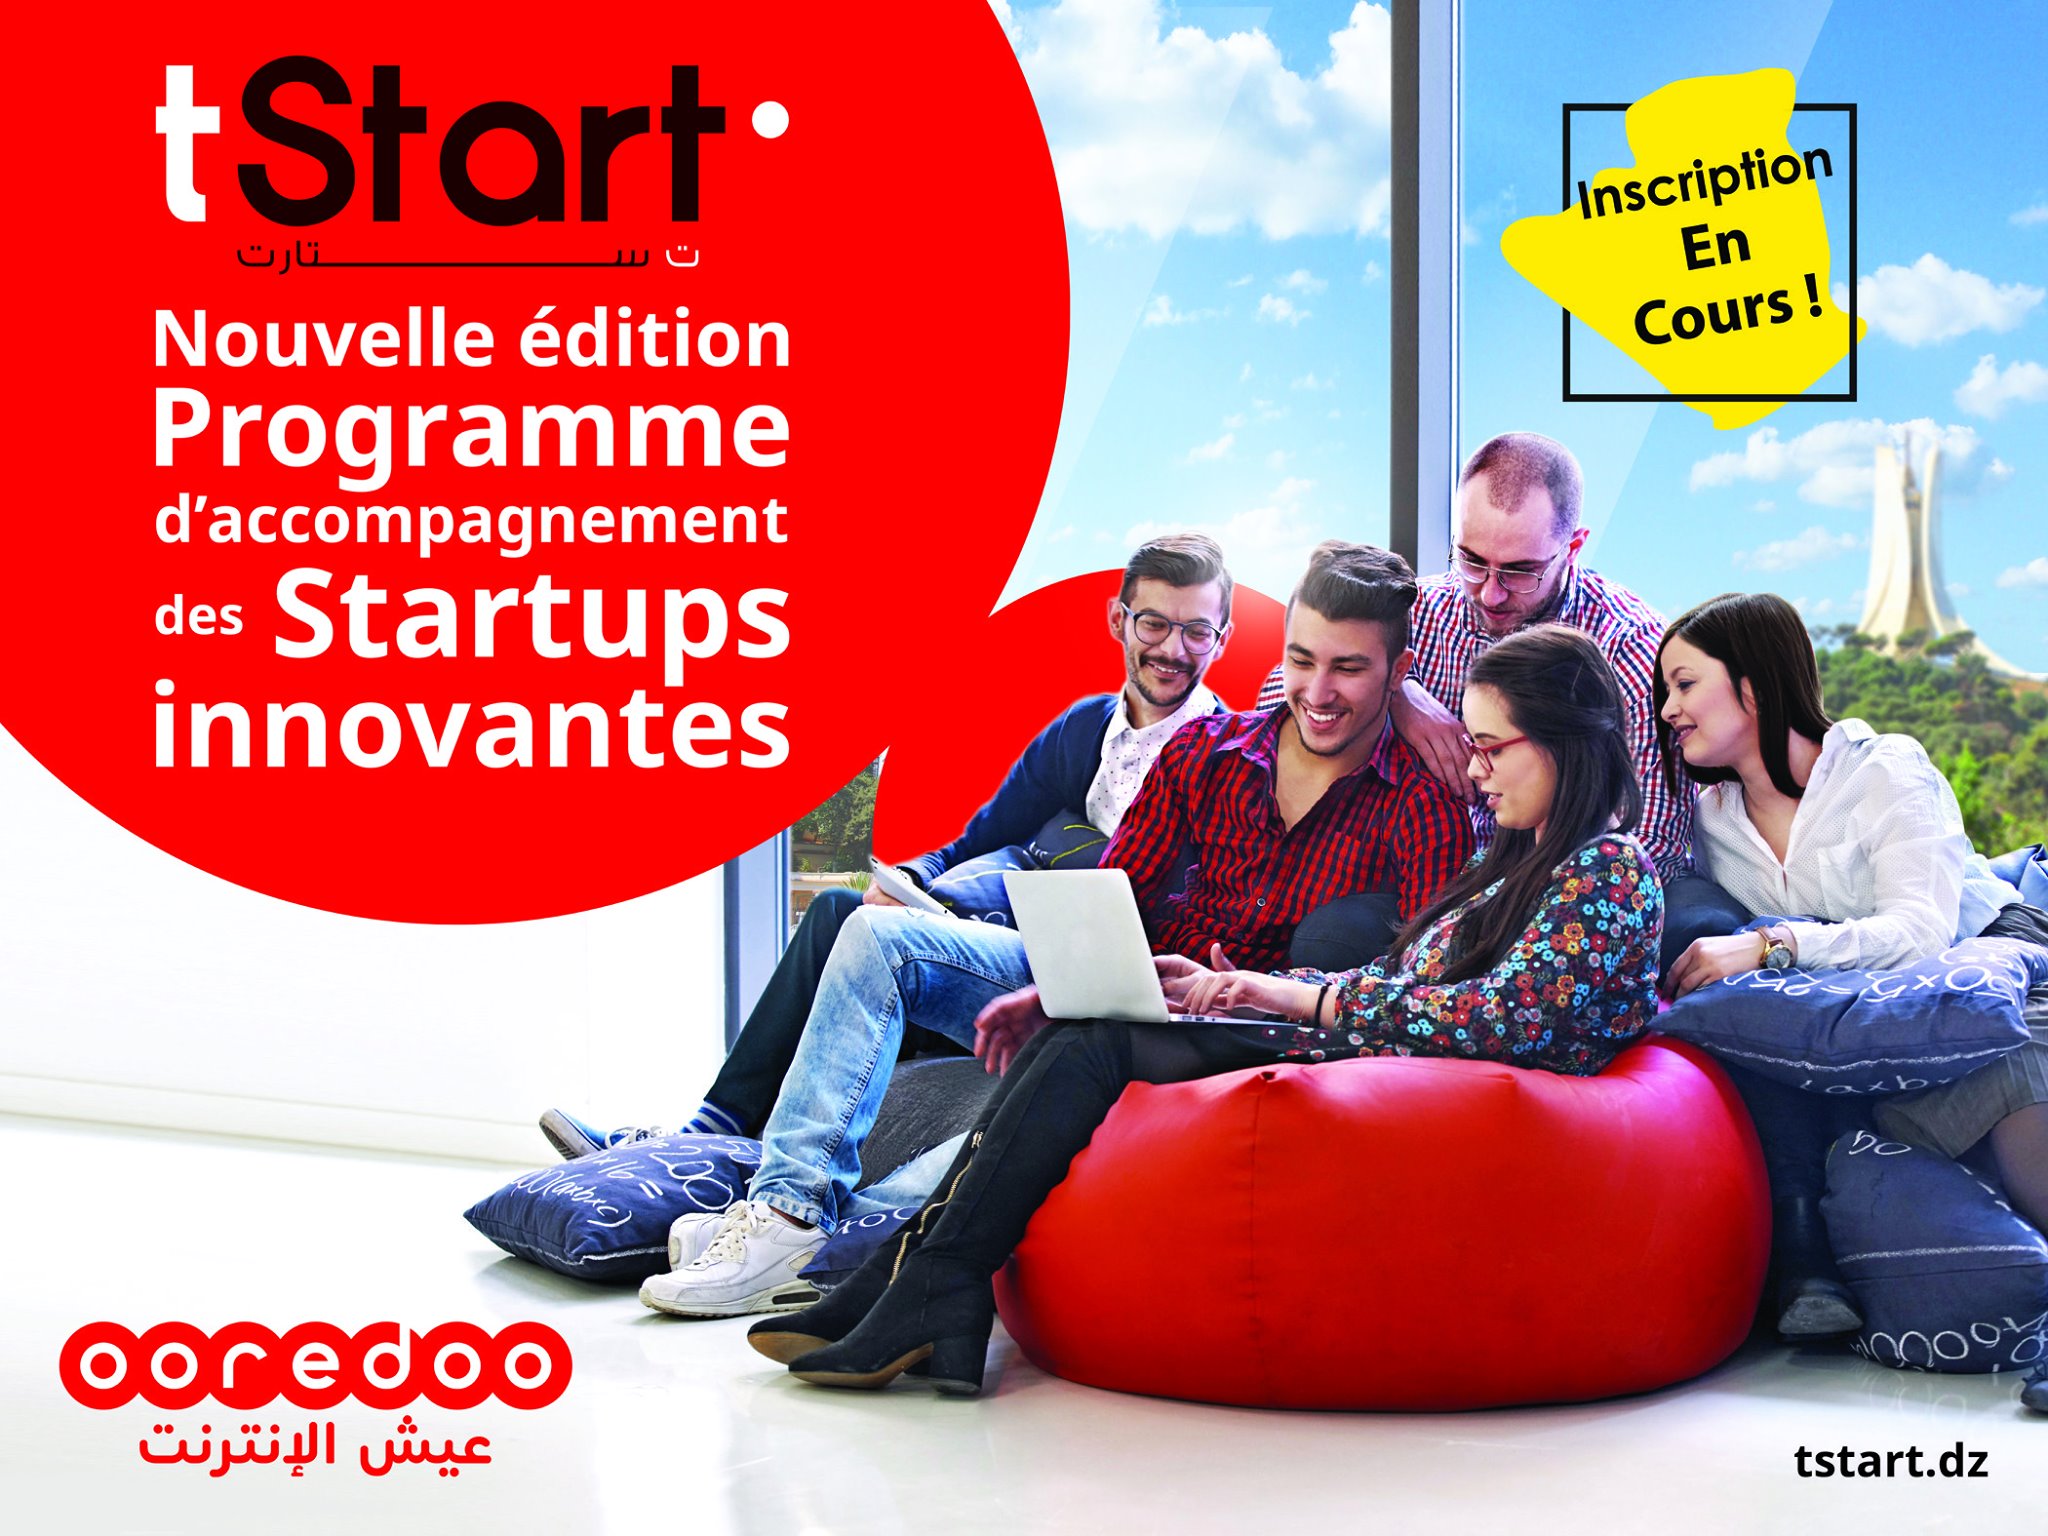 Ooredoo relance une promotion de startups TStart